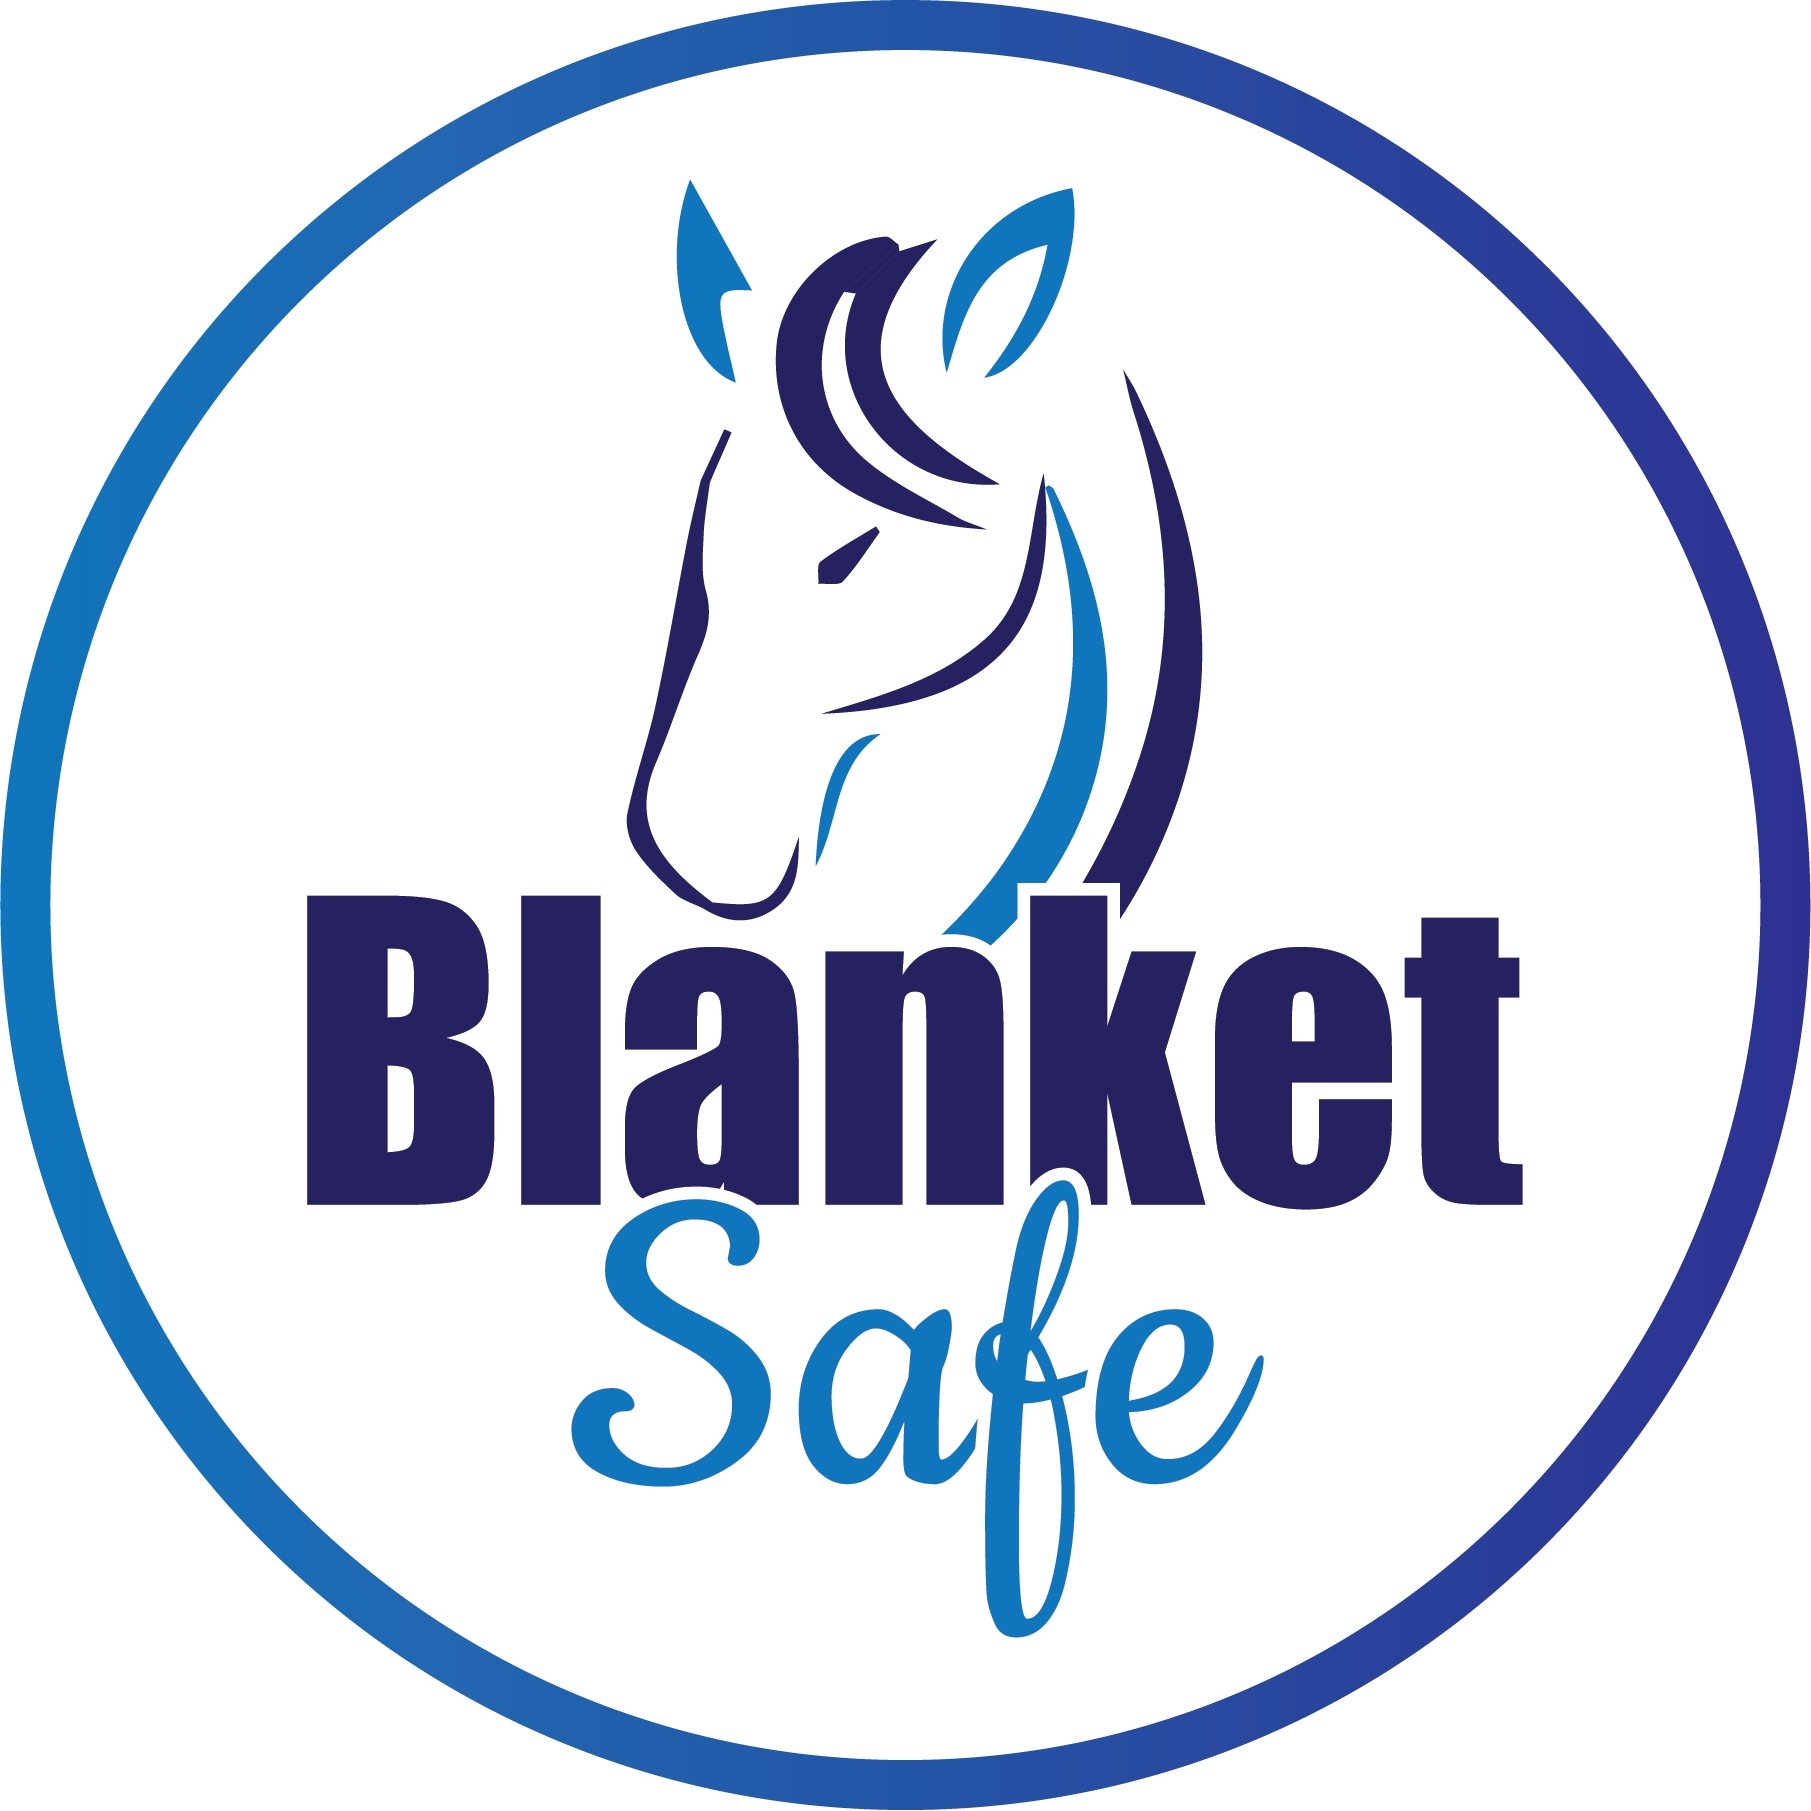 Blanket Safe